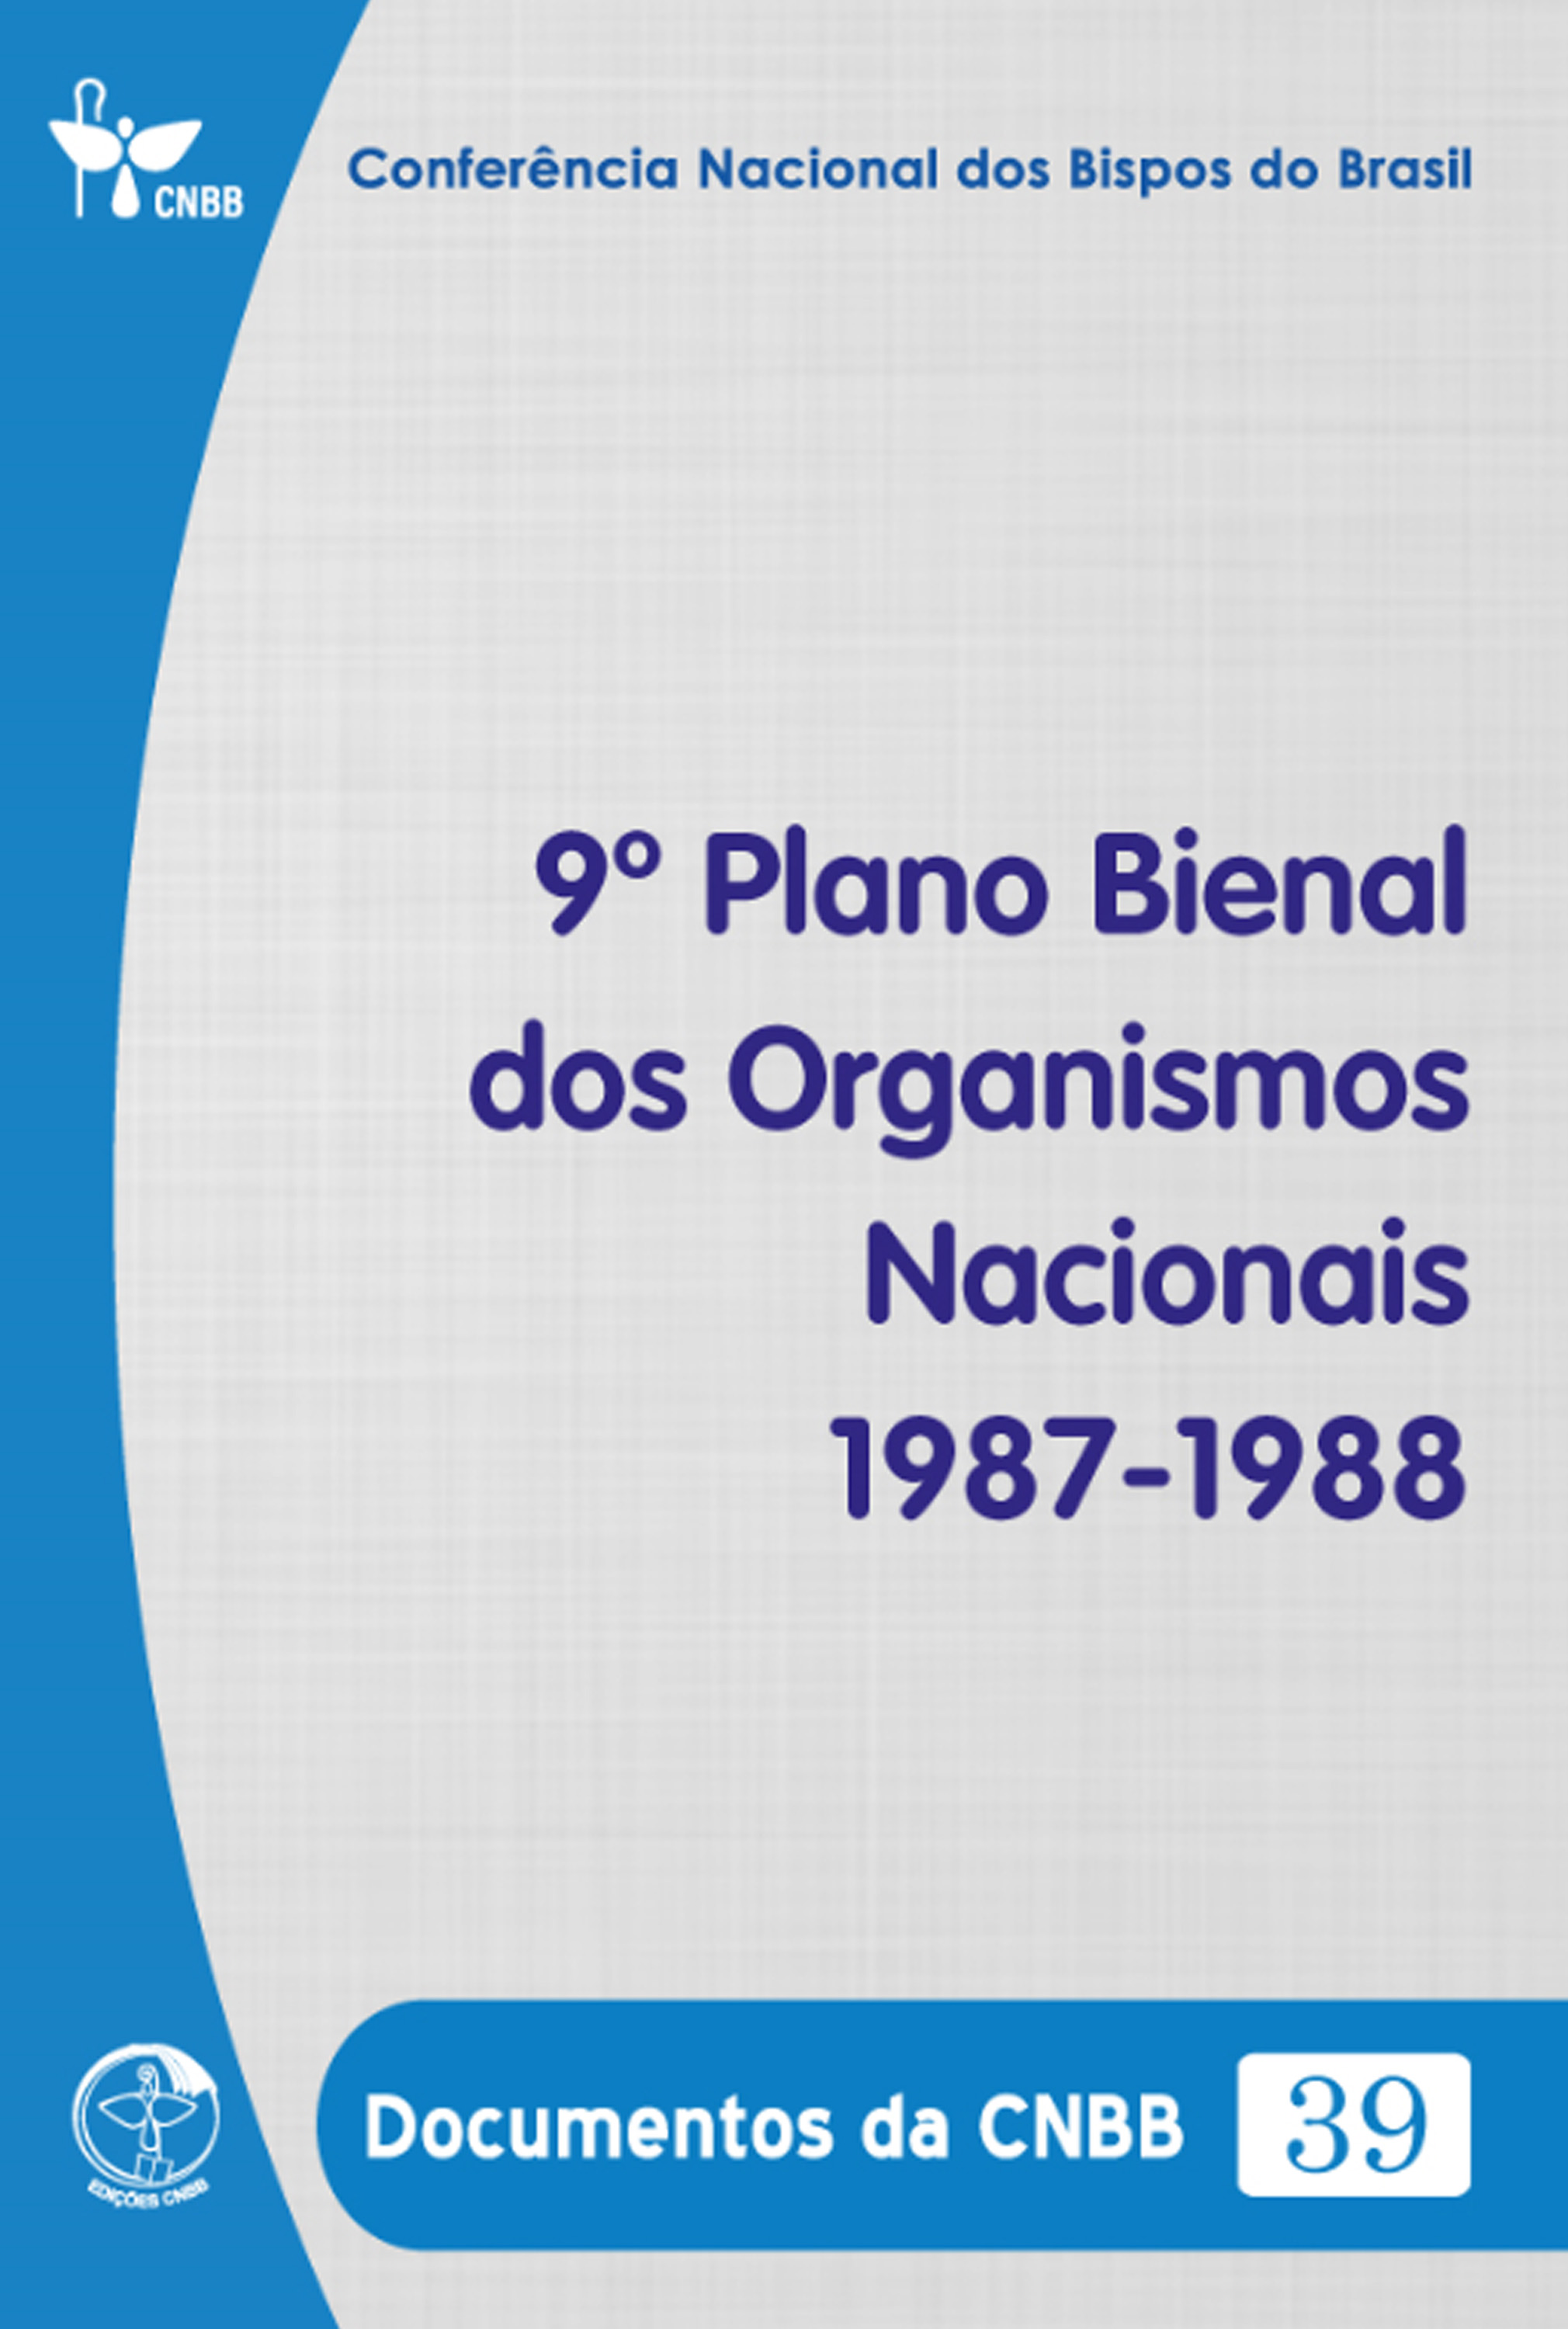 9º Plano Bienal dos Organismos Nacionais 1987-1988 - Documentos da CNBB 39 - Digital